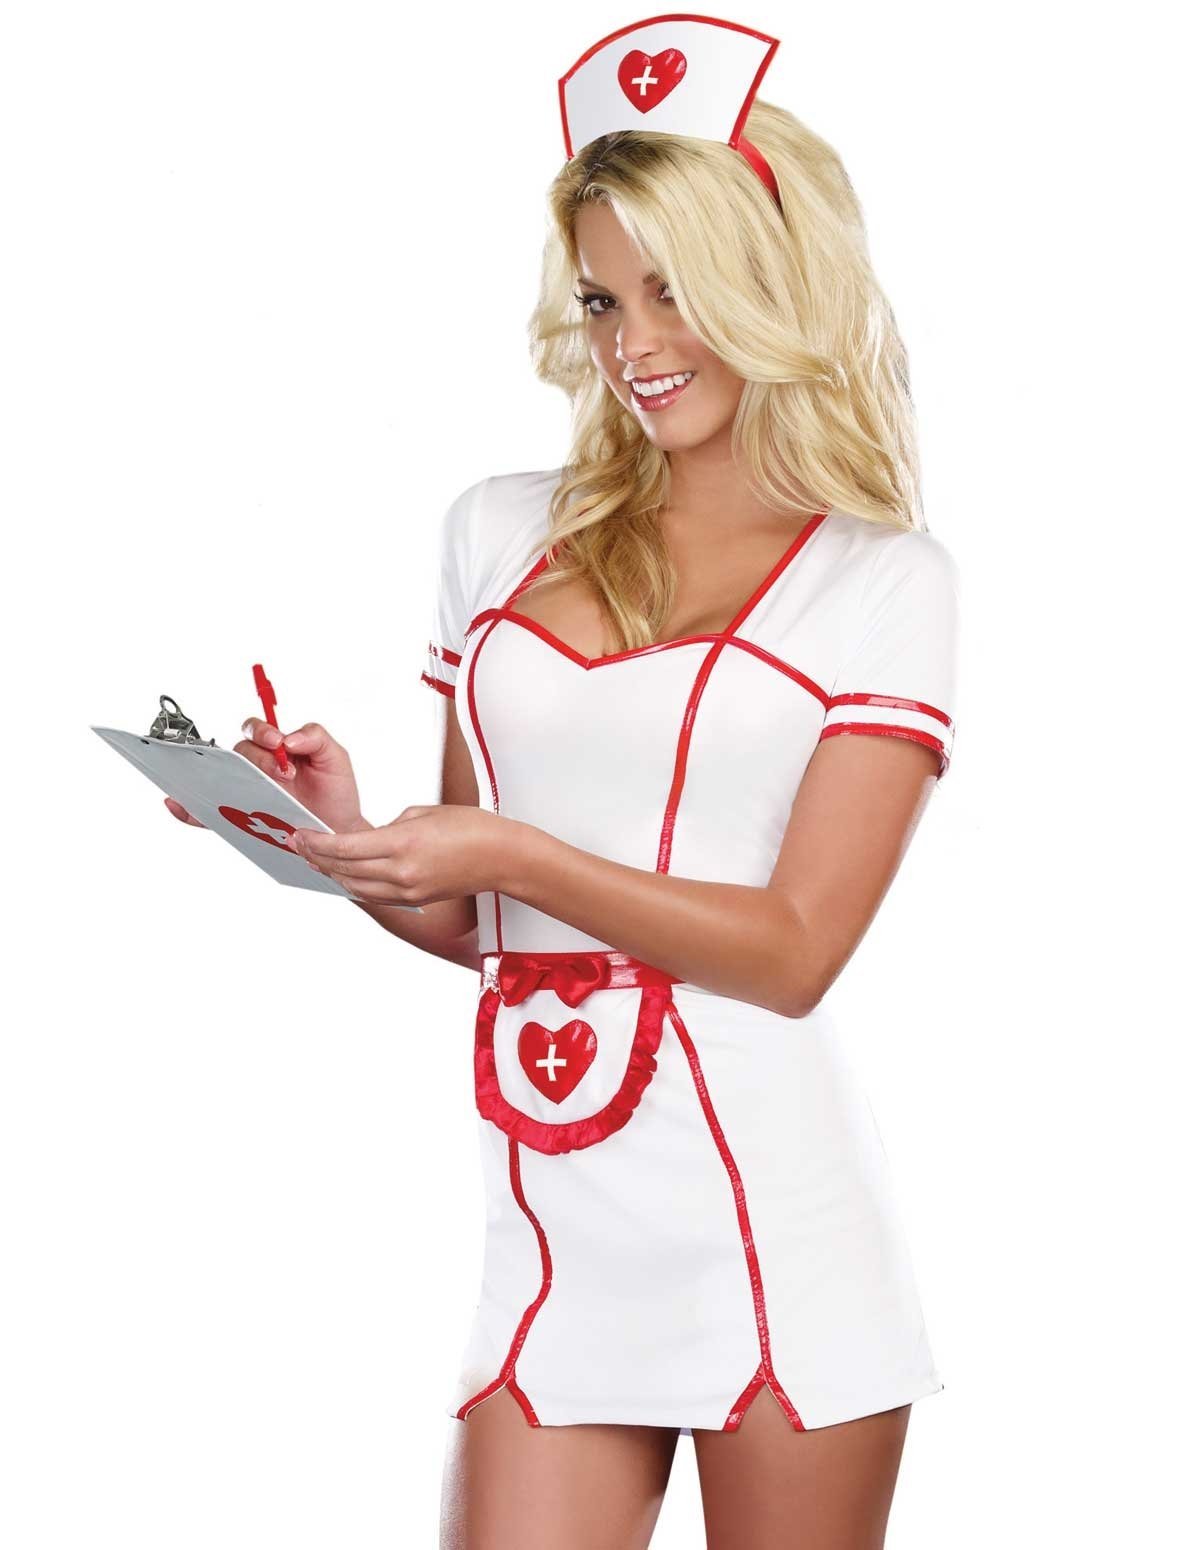 Кожаный наряд обнажённой медсестры